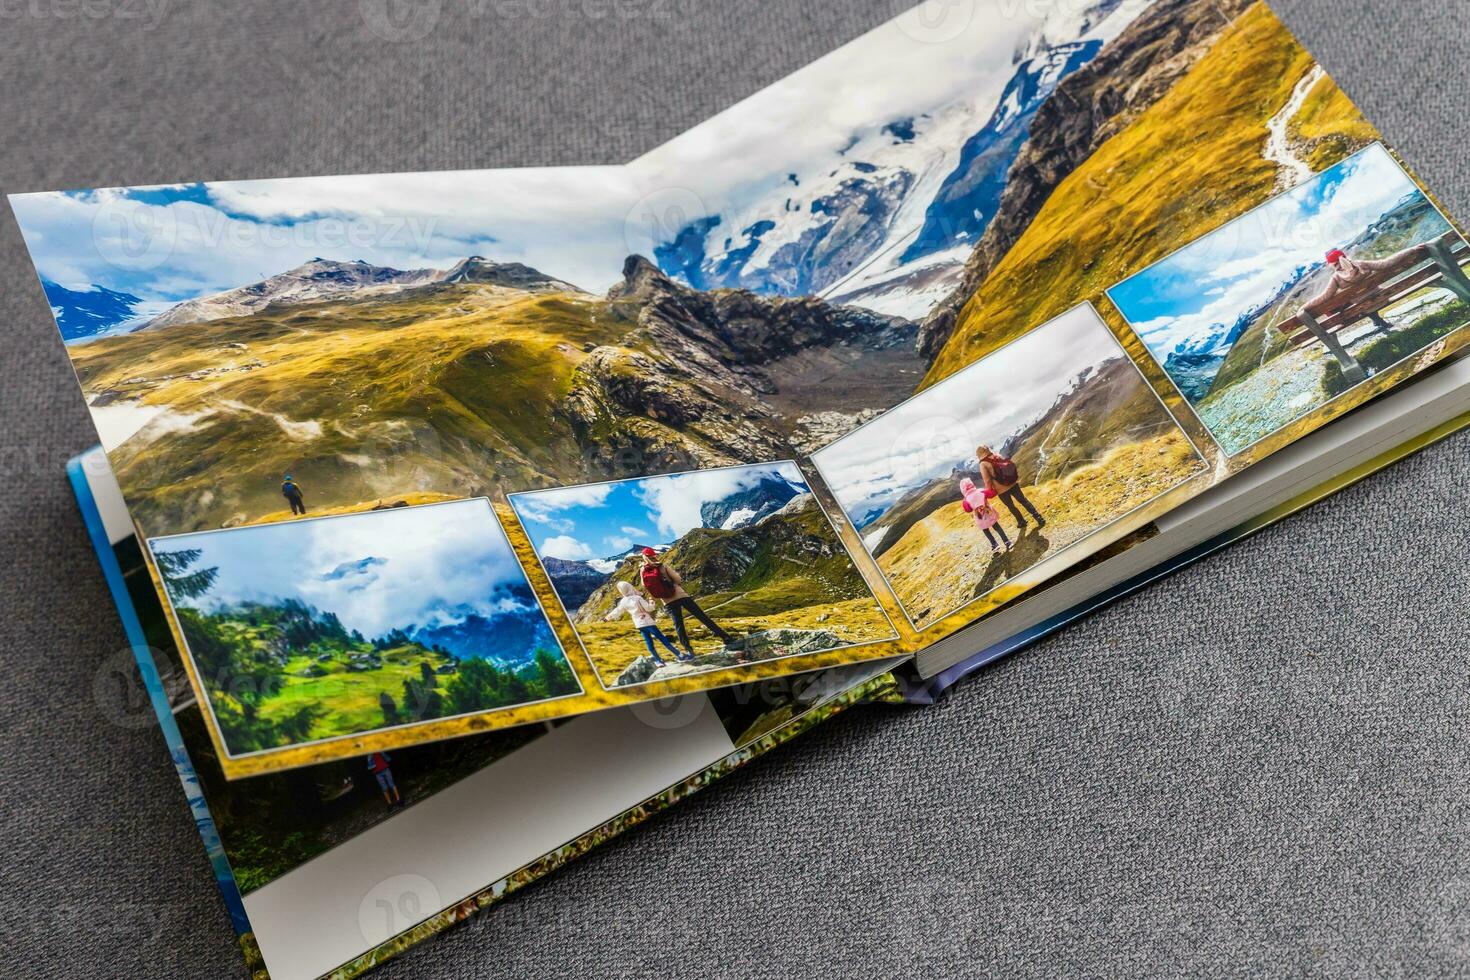 Fotobuch Album auf Deck Tabelle mit Reise Fotos